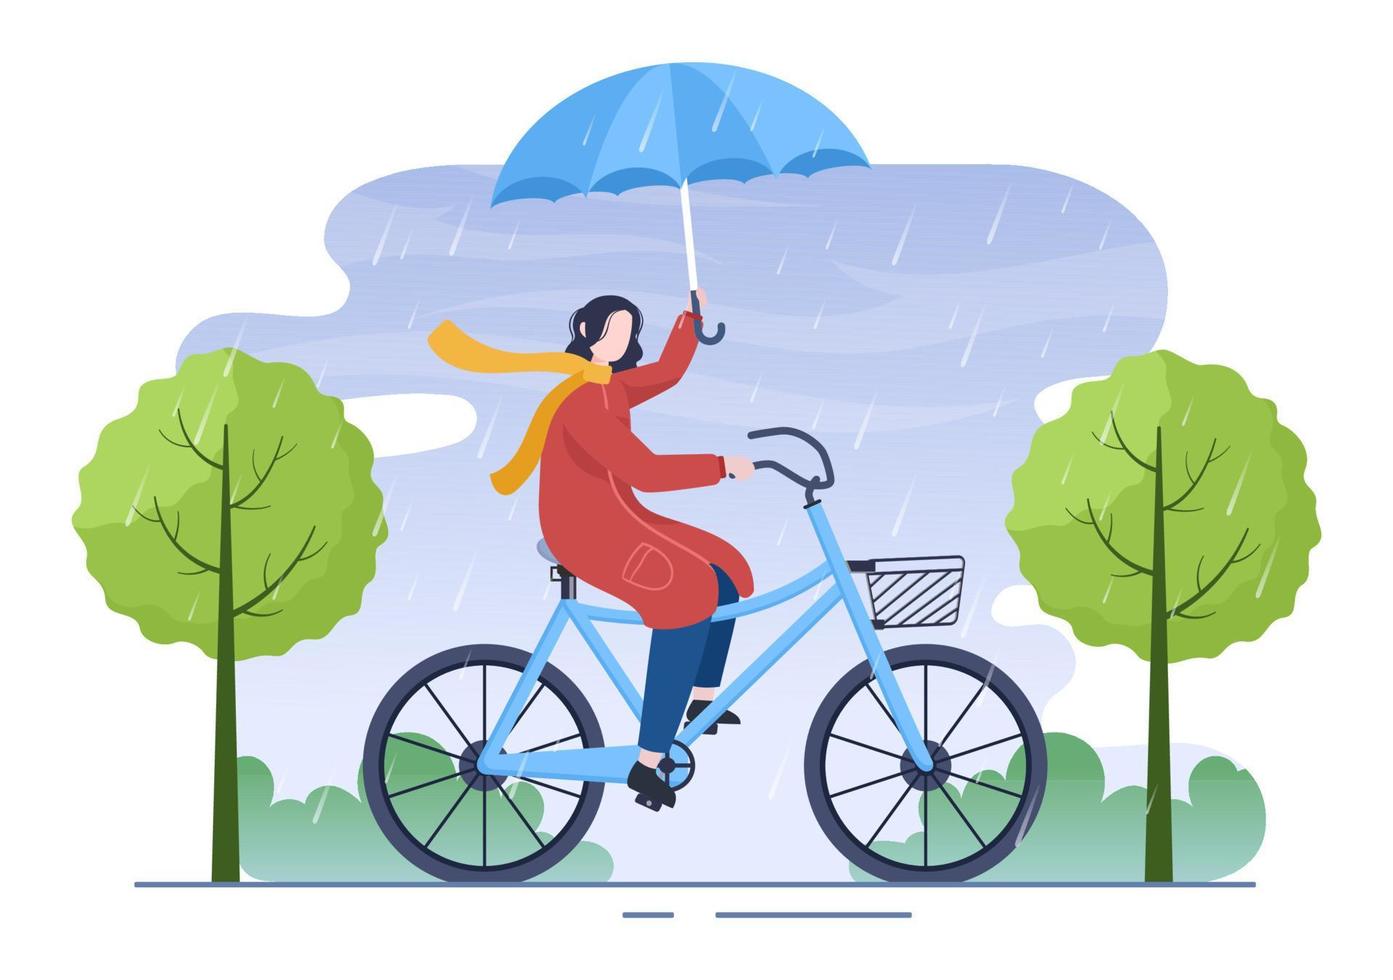 persone che indossano impermeabile, stivali di gomma e portano ombrello nel mezzo di una tempesta di acquazzoni. illustrazione vettoriale del fumetto di sfondo piatto per banner o poster